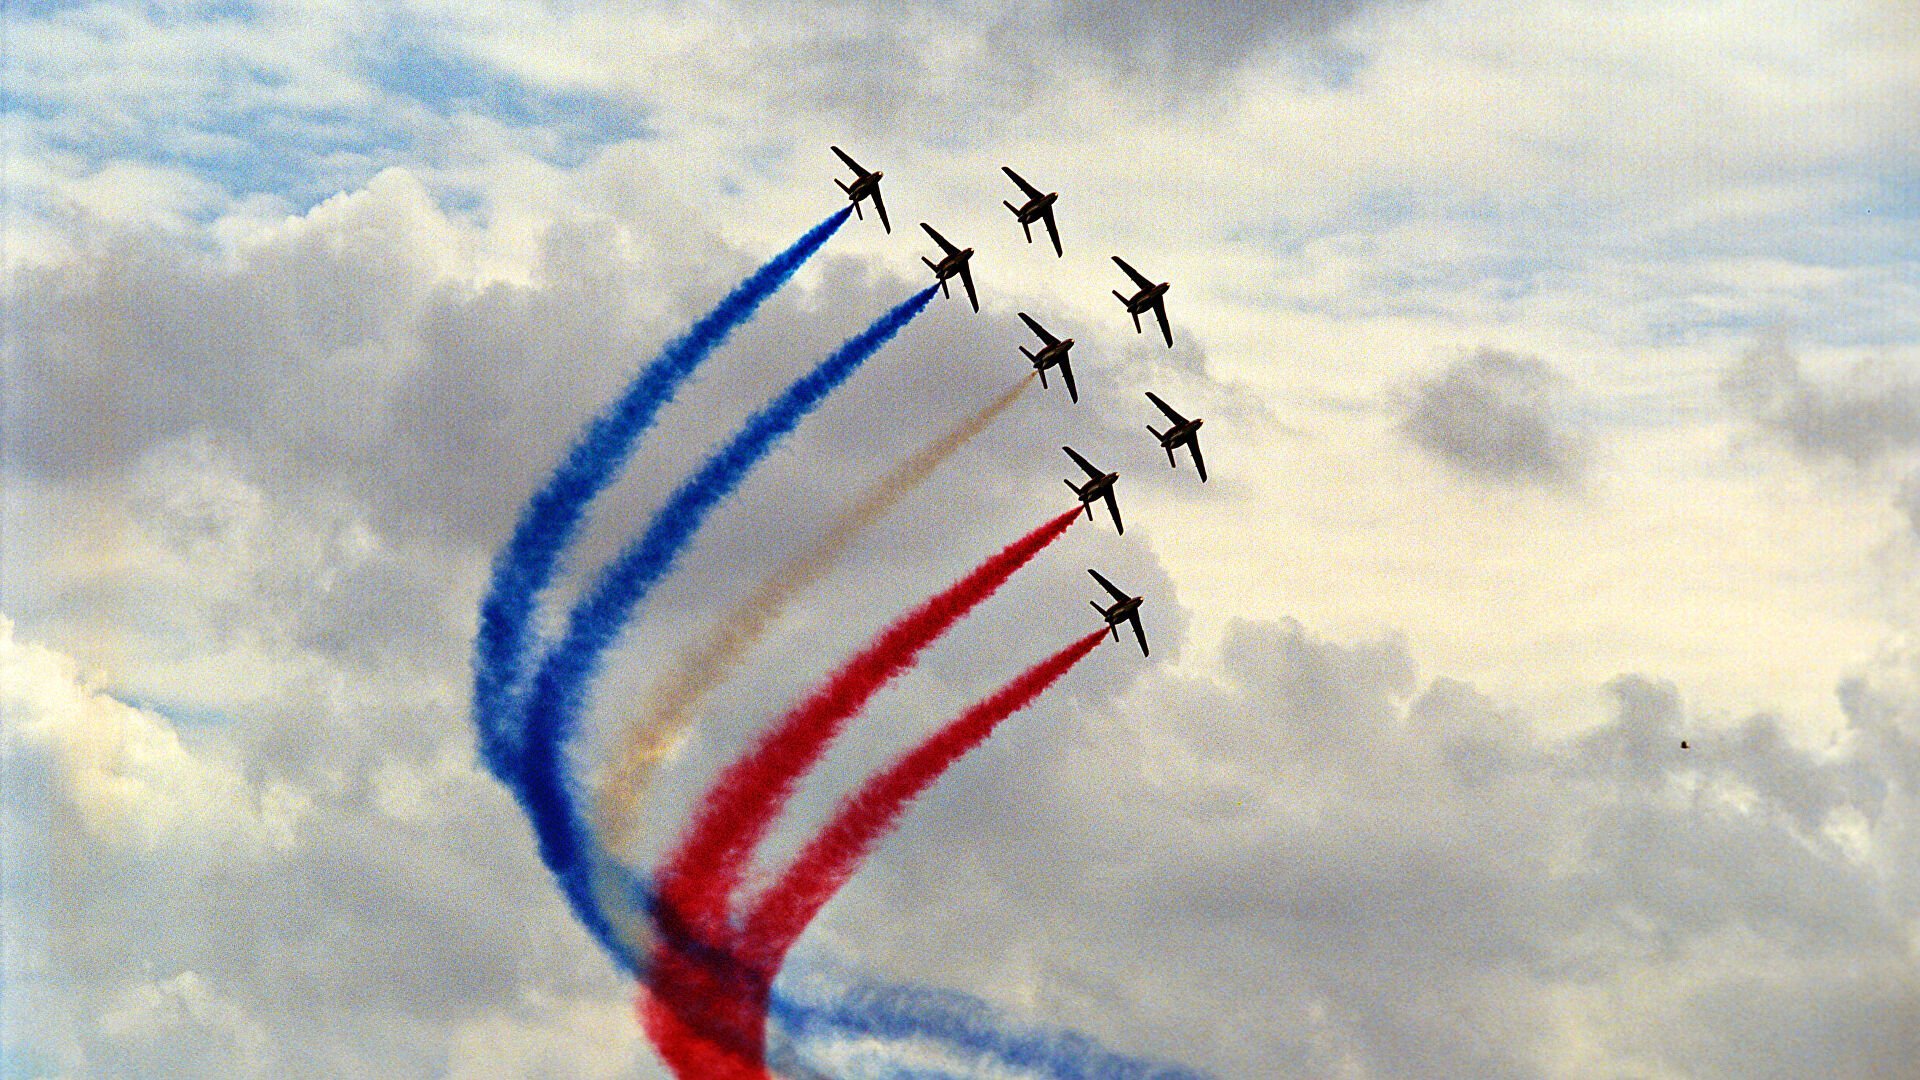 Полеты 1 мая. Патруль де Франс пилотажная группа. Пилотажная группа первый полет. Самолеты Триколор. Самолет с российским флагом.